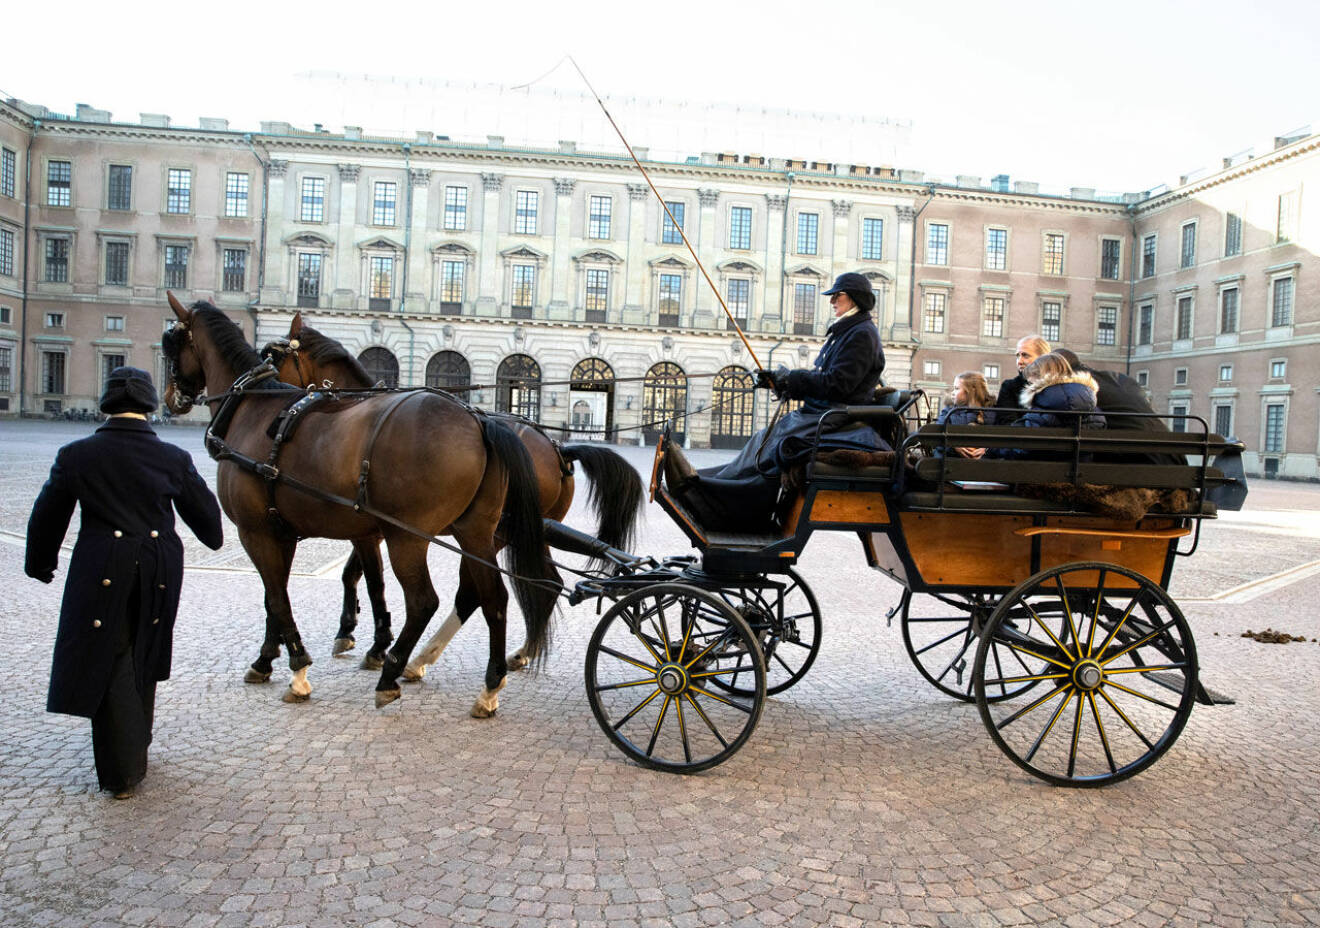 Emilia fick åka häst och vagn efter sin Stora Dag med kronprinsessan Victoria på Kungliga slottet.